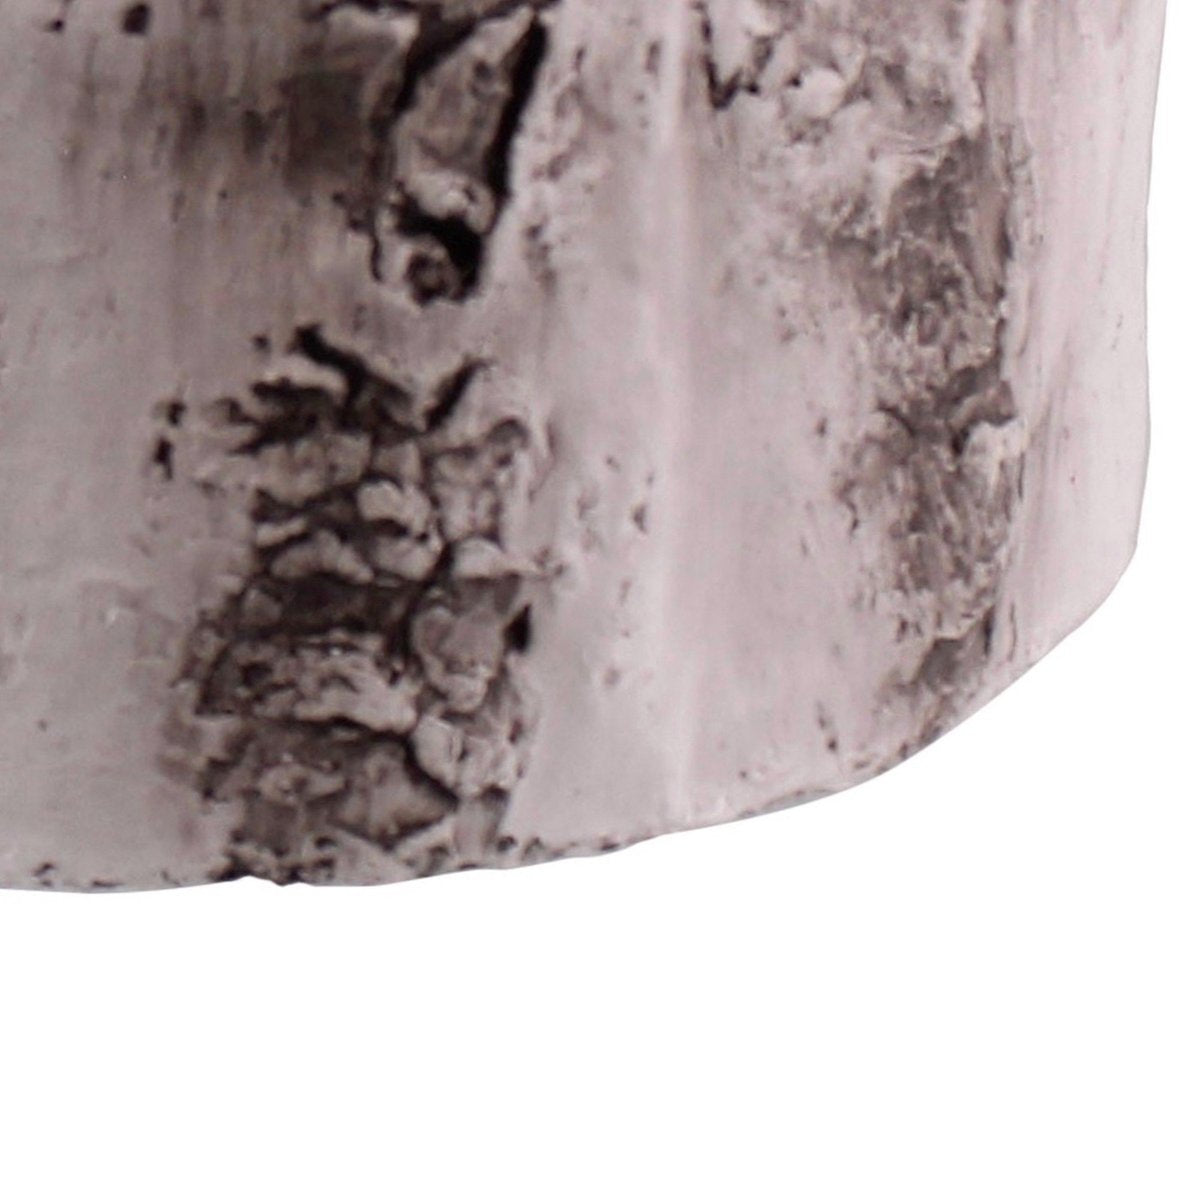 White Birch Cement Cylinder Planter